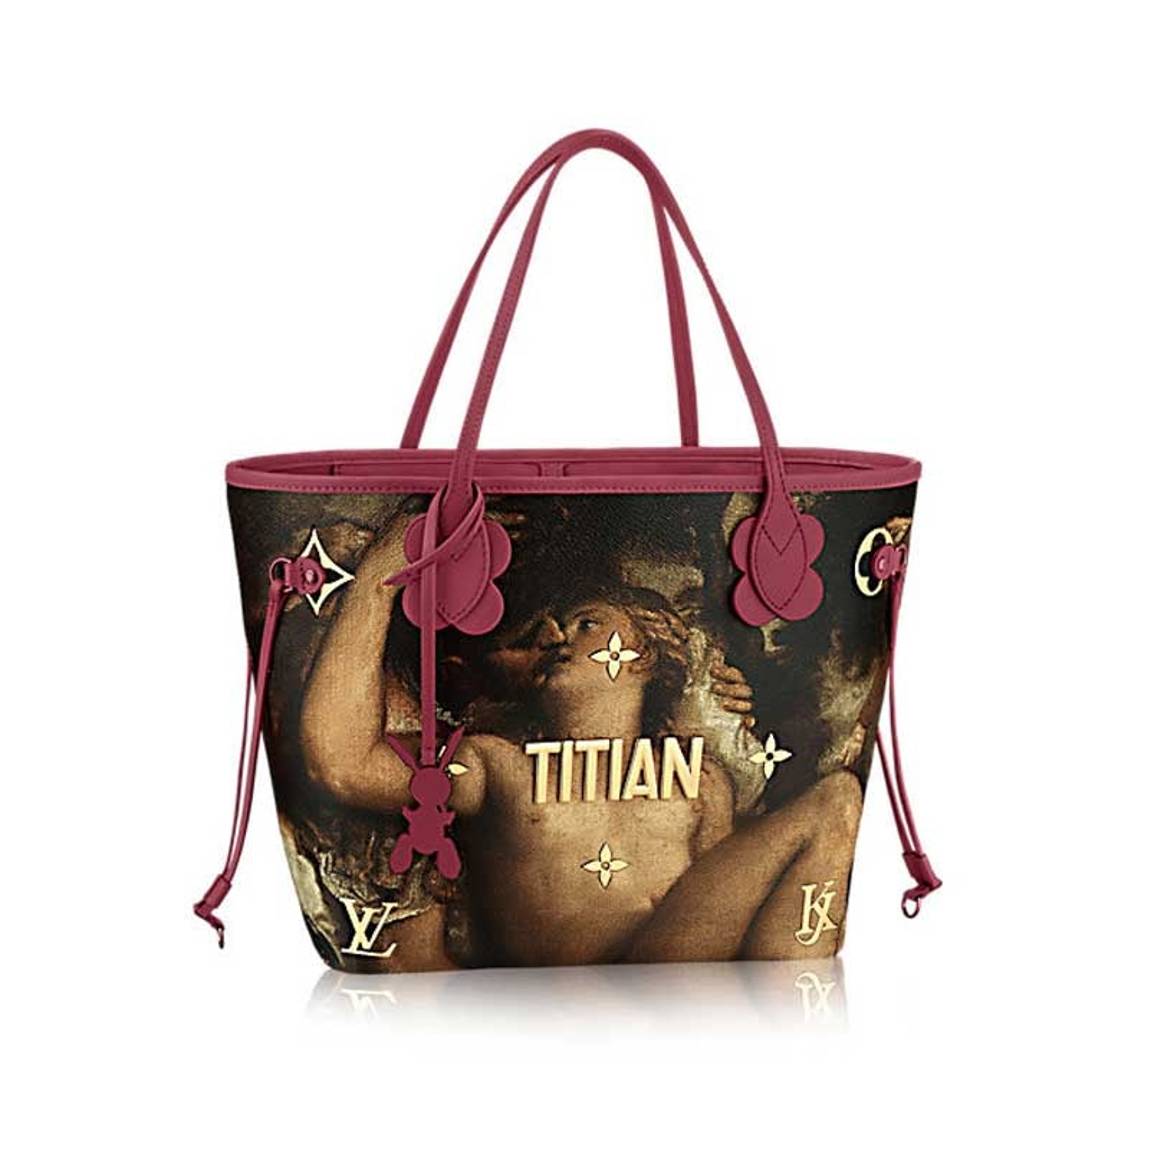 Jeff Koons lance une collection de sacs à main avec Vuitton